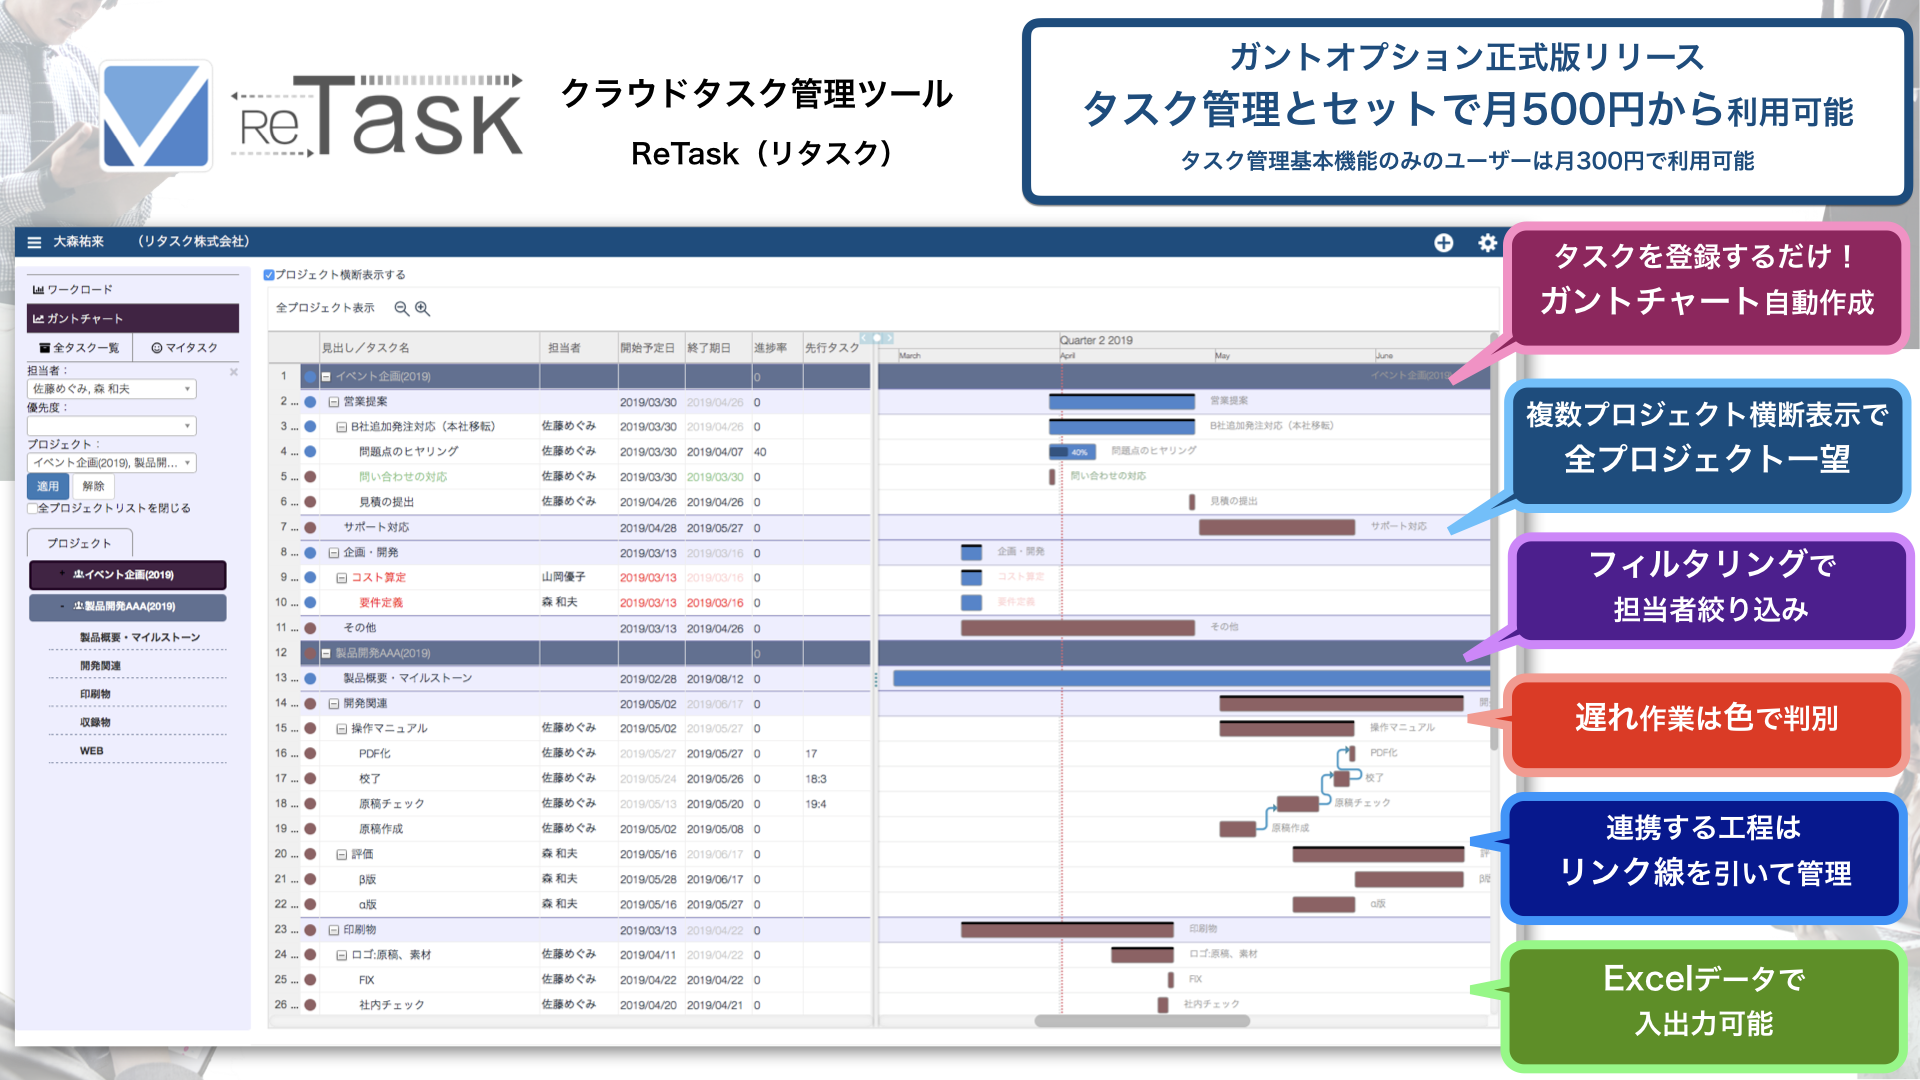 クラウドタスク管理 ツール Retask に ガントチャート機能を正式搭載 個人 チーム 全社 を同時に見渡すことが可能に 株式会社メディアナビのプレスリリース